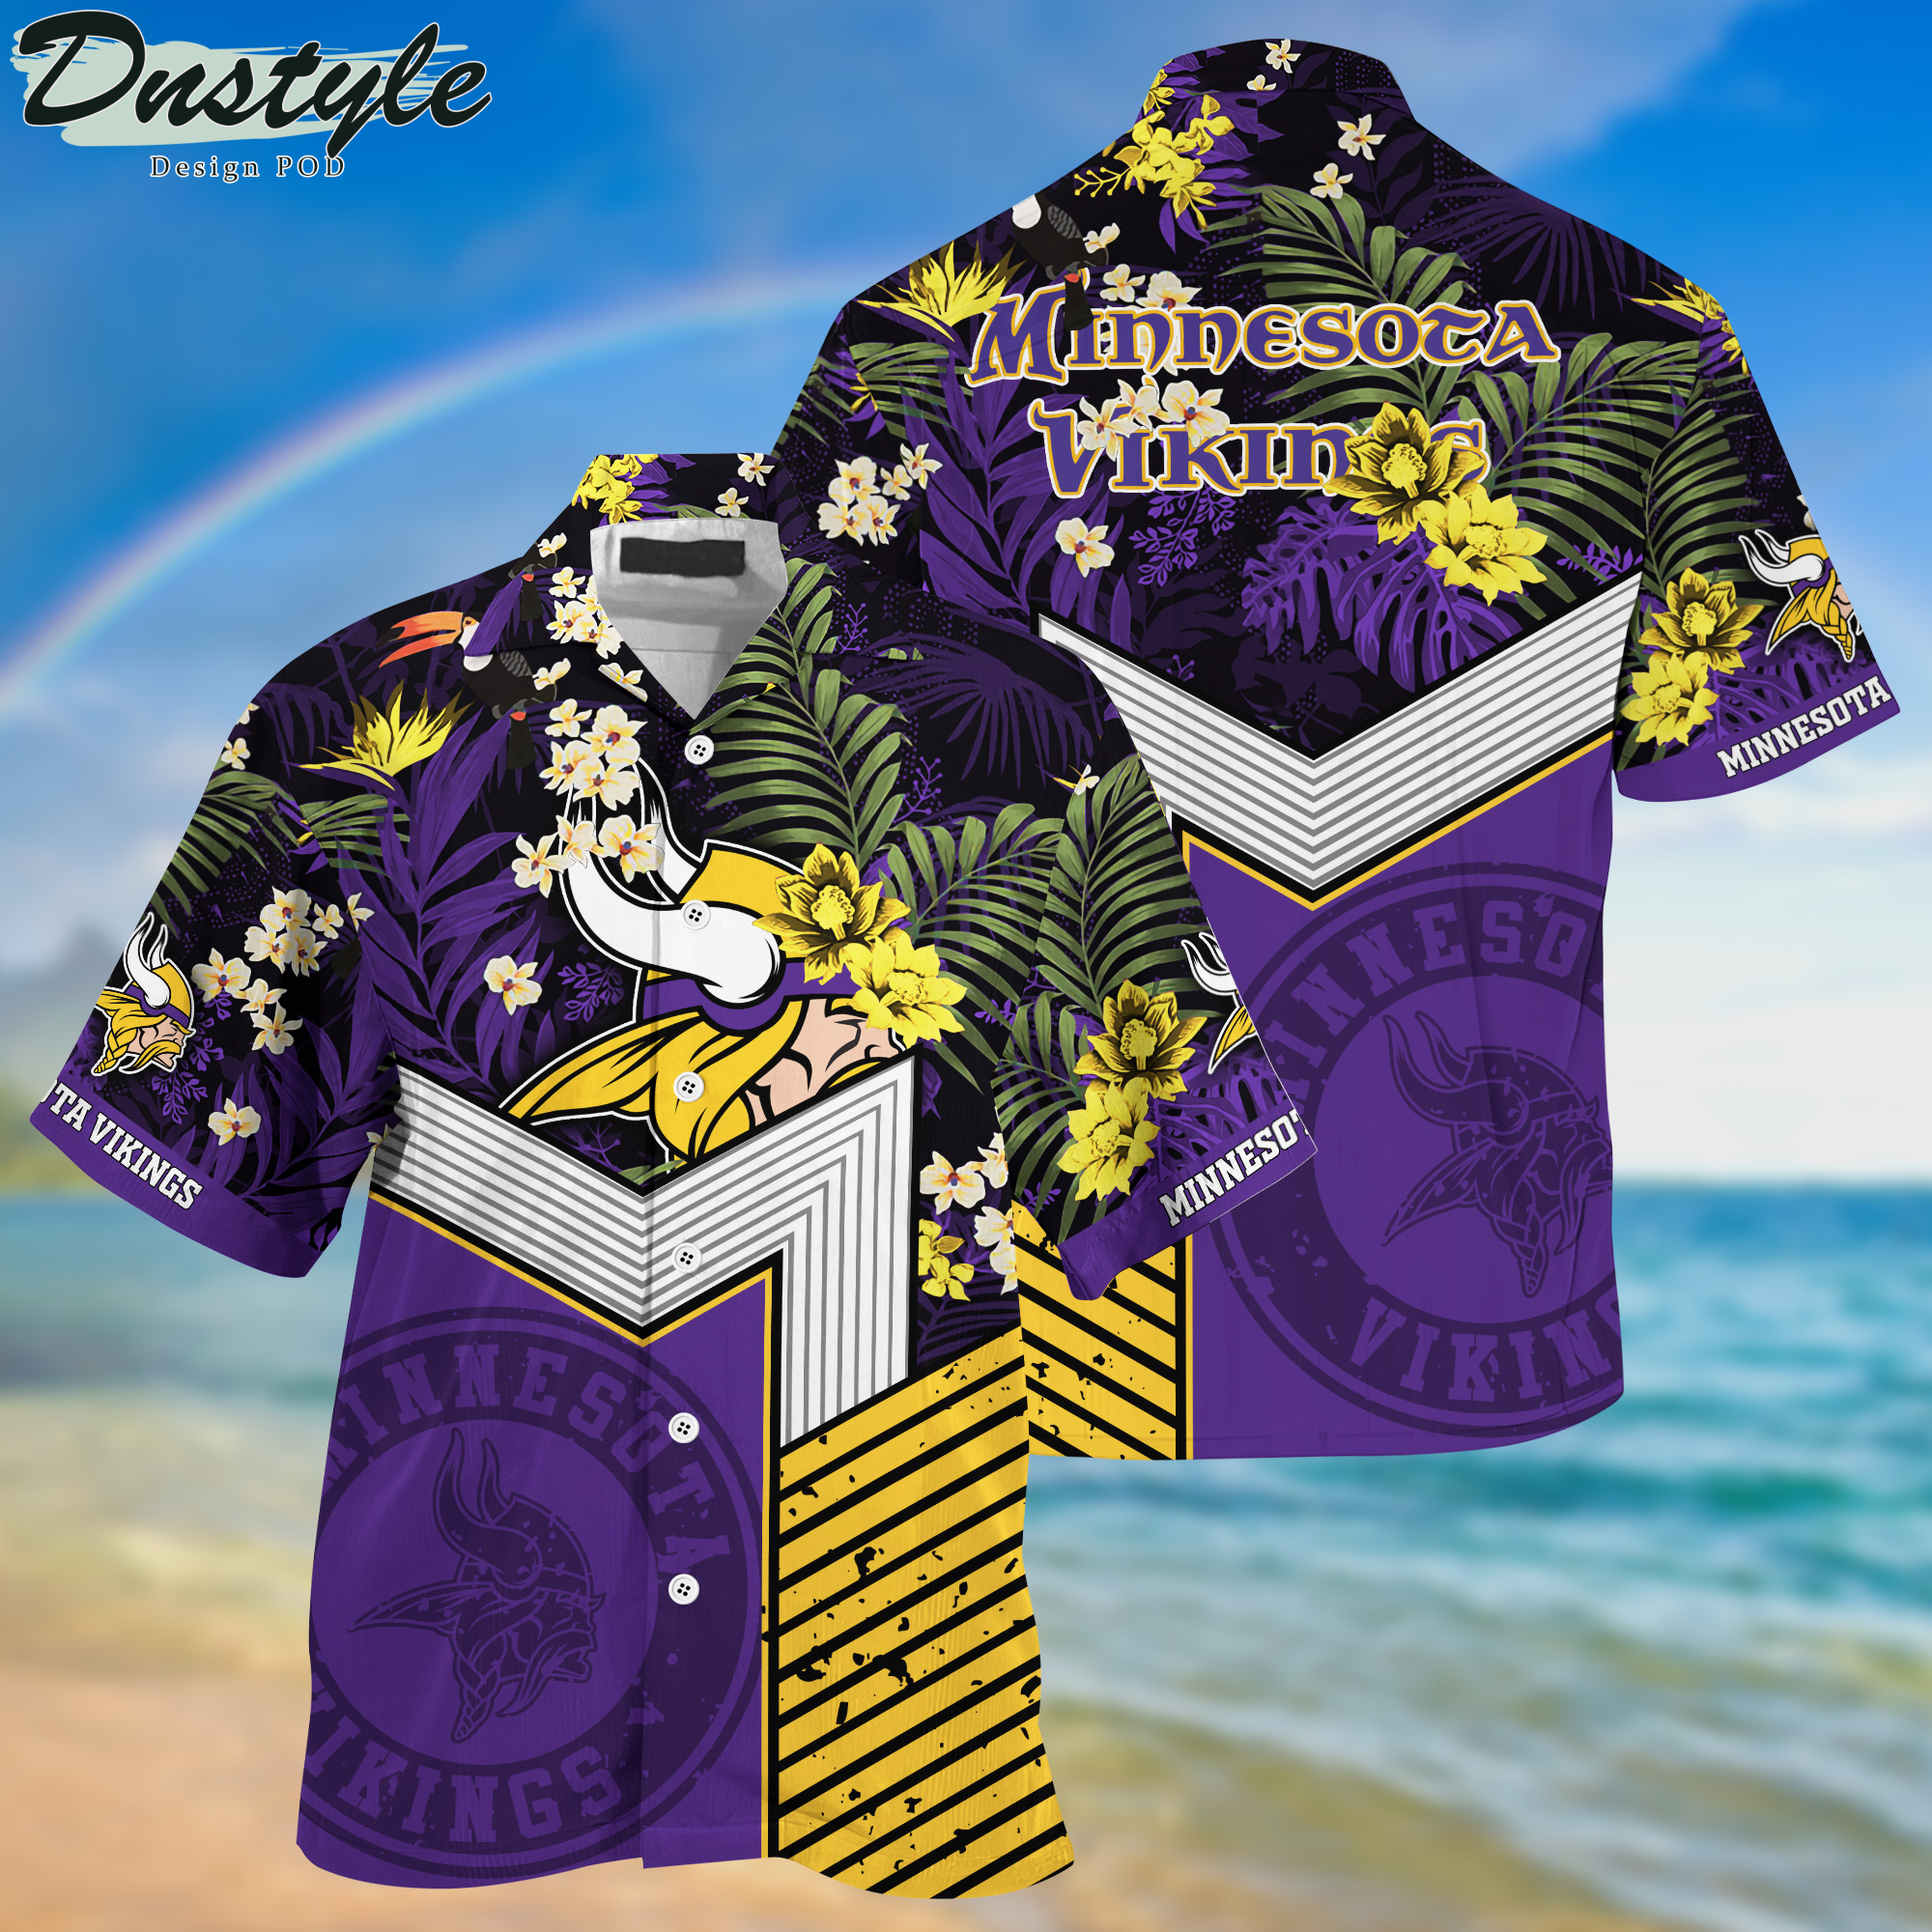 Minnesota Vikings Hawaii Shirt And Shorts New Collection